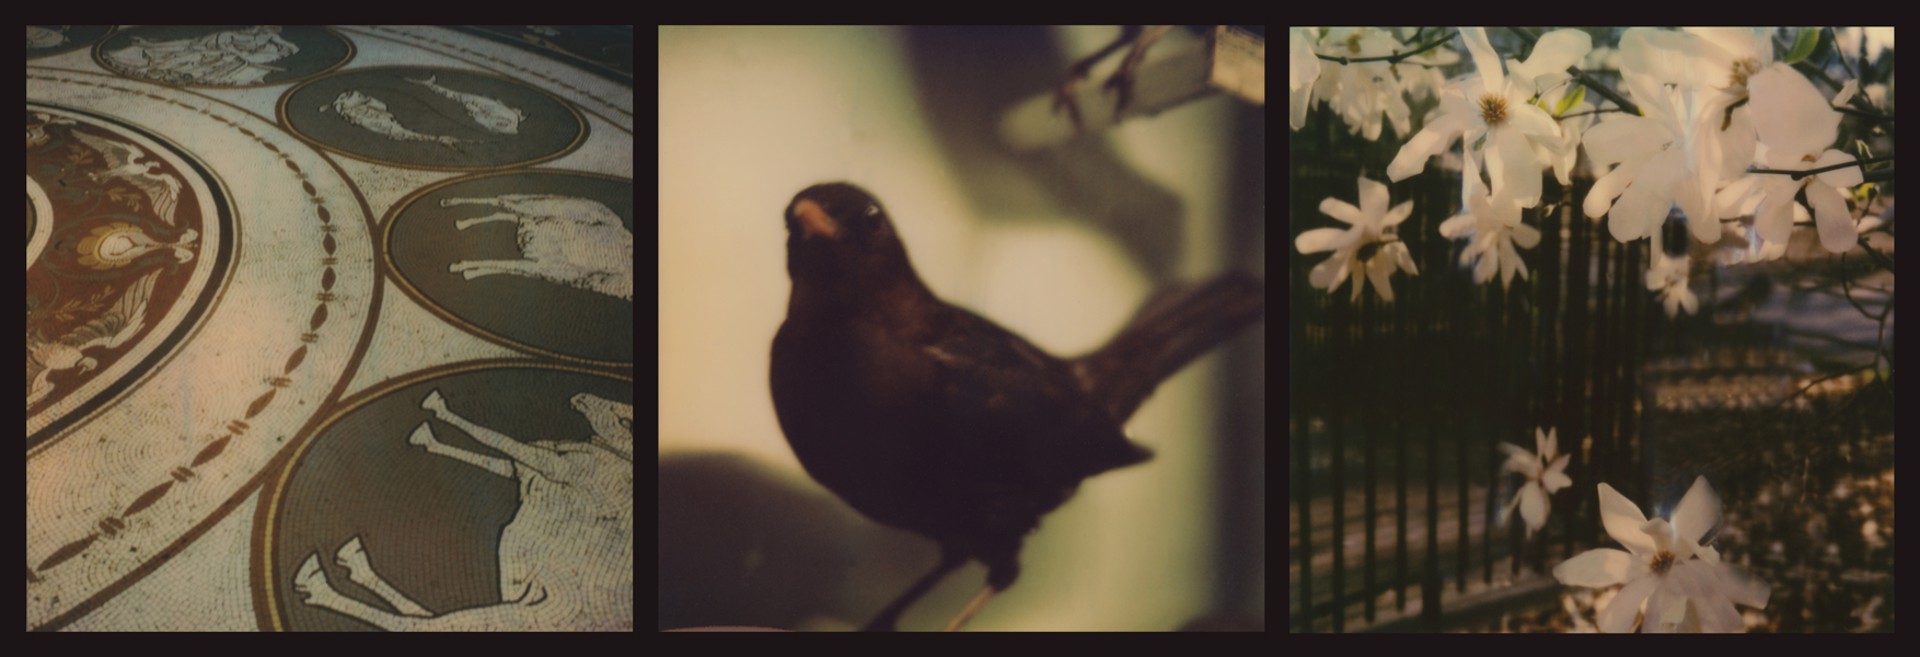 Raptors and Songbirds (Blackbird) by Lori Van Houten